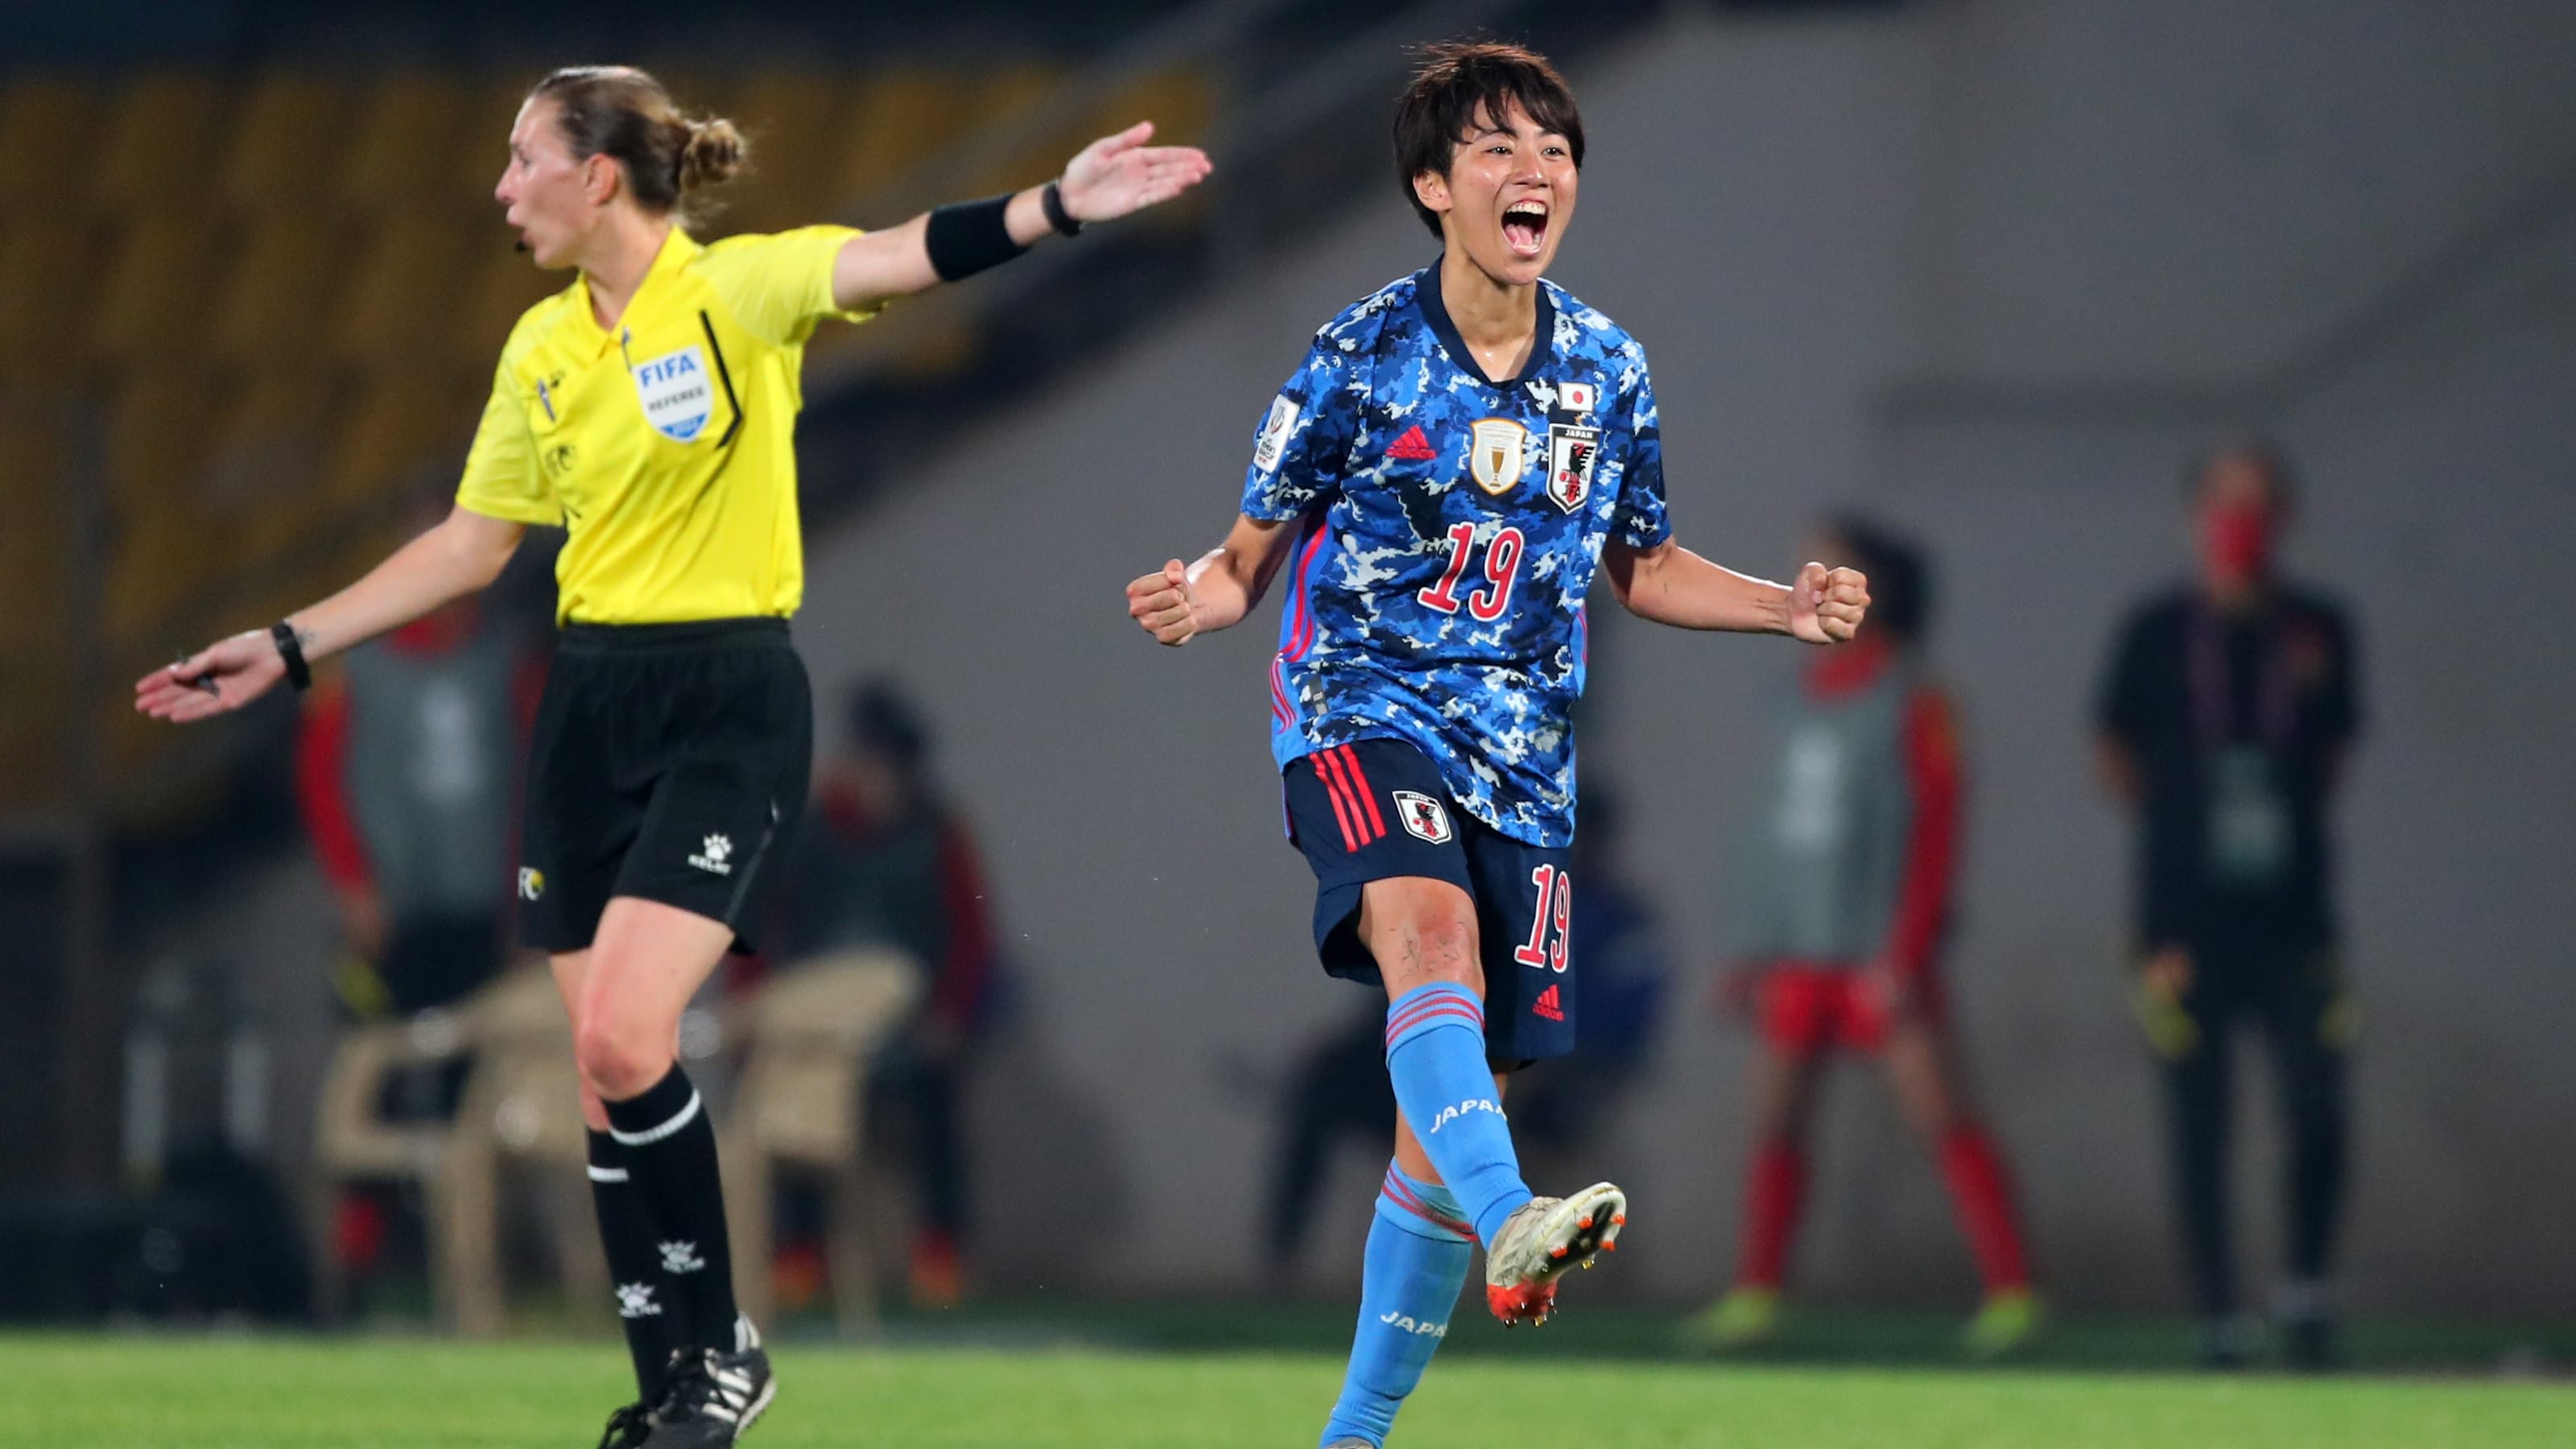 7月19日開幕 Eaff E 1サッカー選手権 女子の放送予定 なでしこジャパンが連覇を狙う